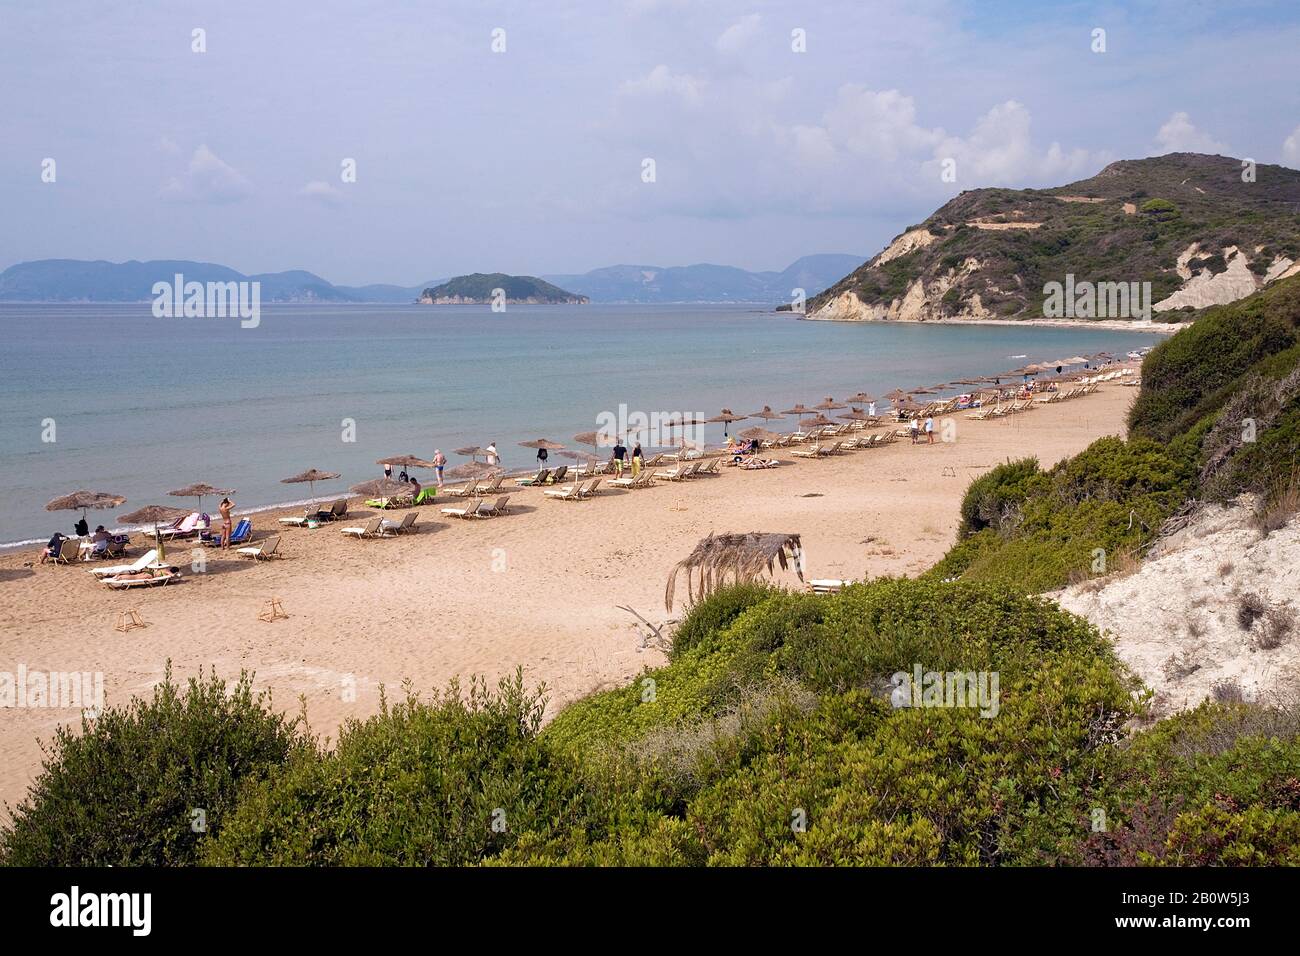 Plage de Gerakas, plage touristique restreinte, parc marin et plage de nidification pour les tortues de mer, île de Zakynthos, Grèce Banque D'Images